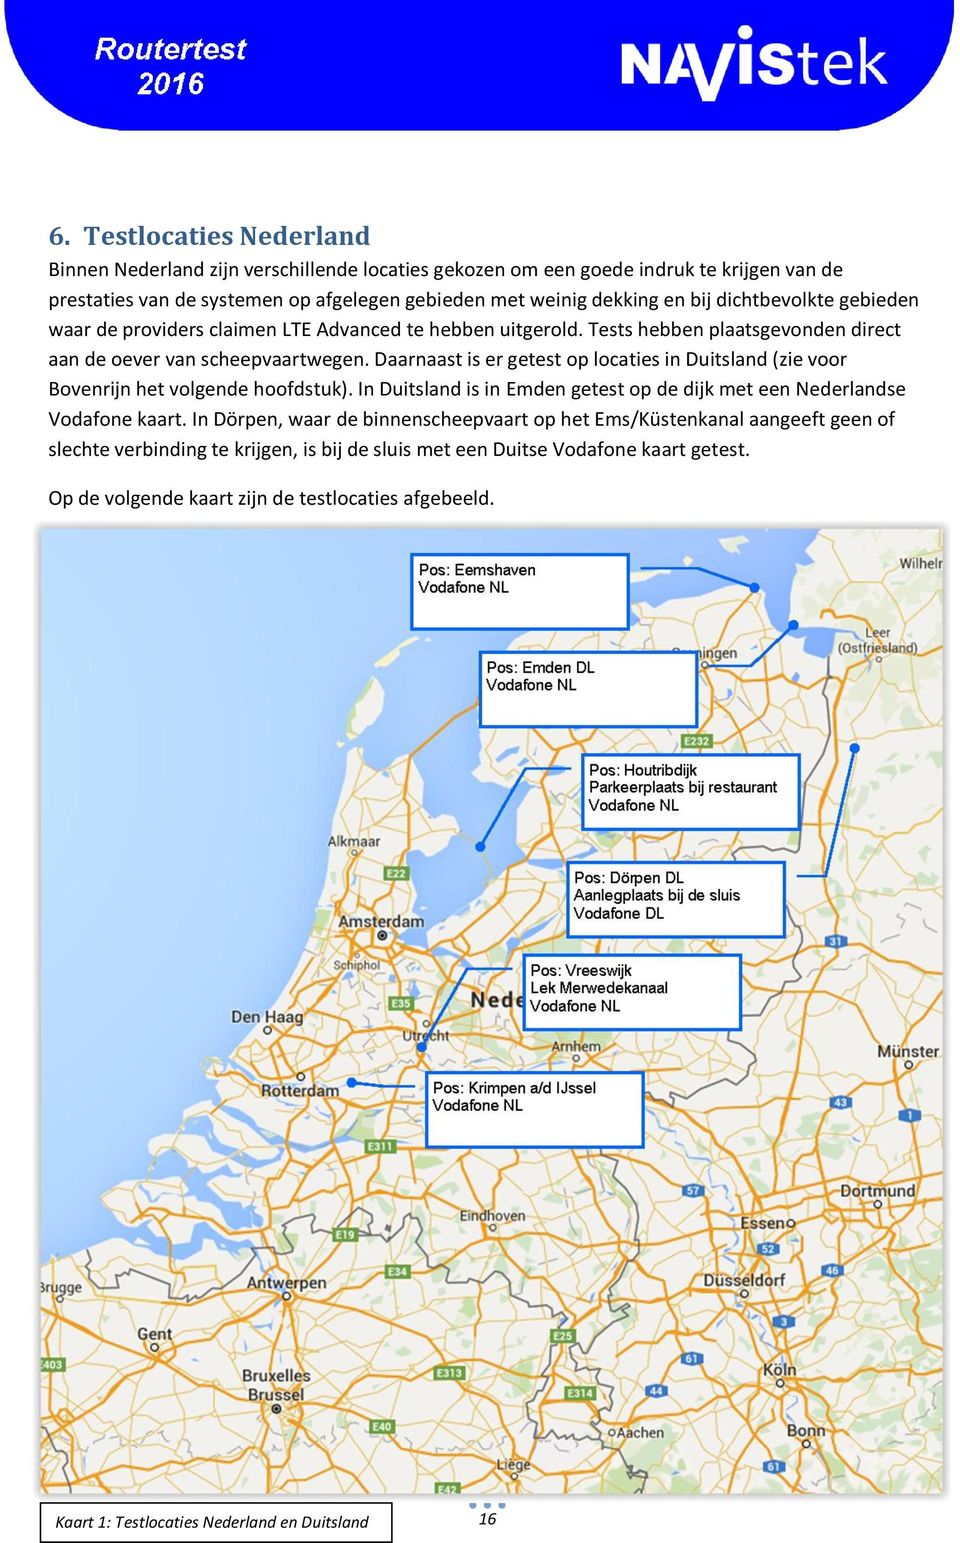 Daarnaast is er getest op locaties in Duitsland (zie voor Bovenrijn het volgende hoofdstuk). In Duitsland is in Emden getest op de dijk met een Nederlandse Vodafone kaart.